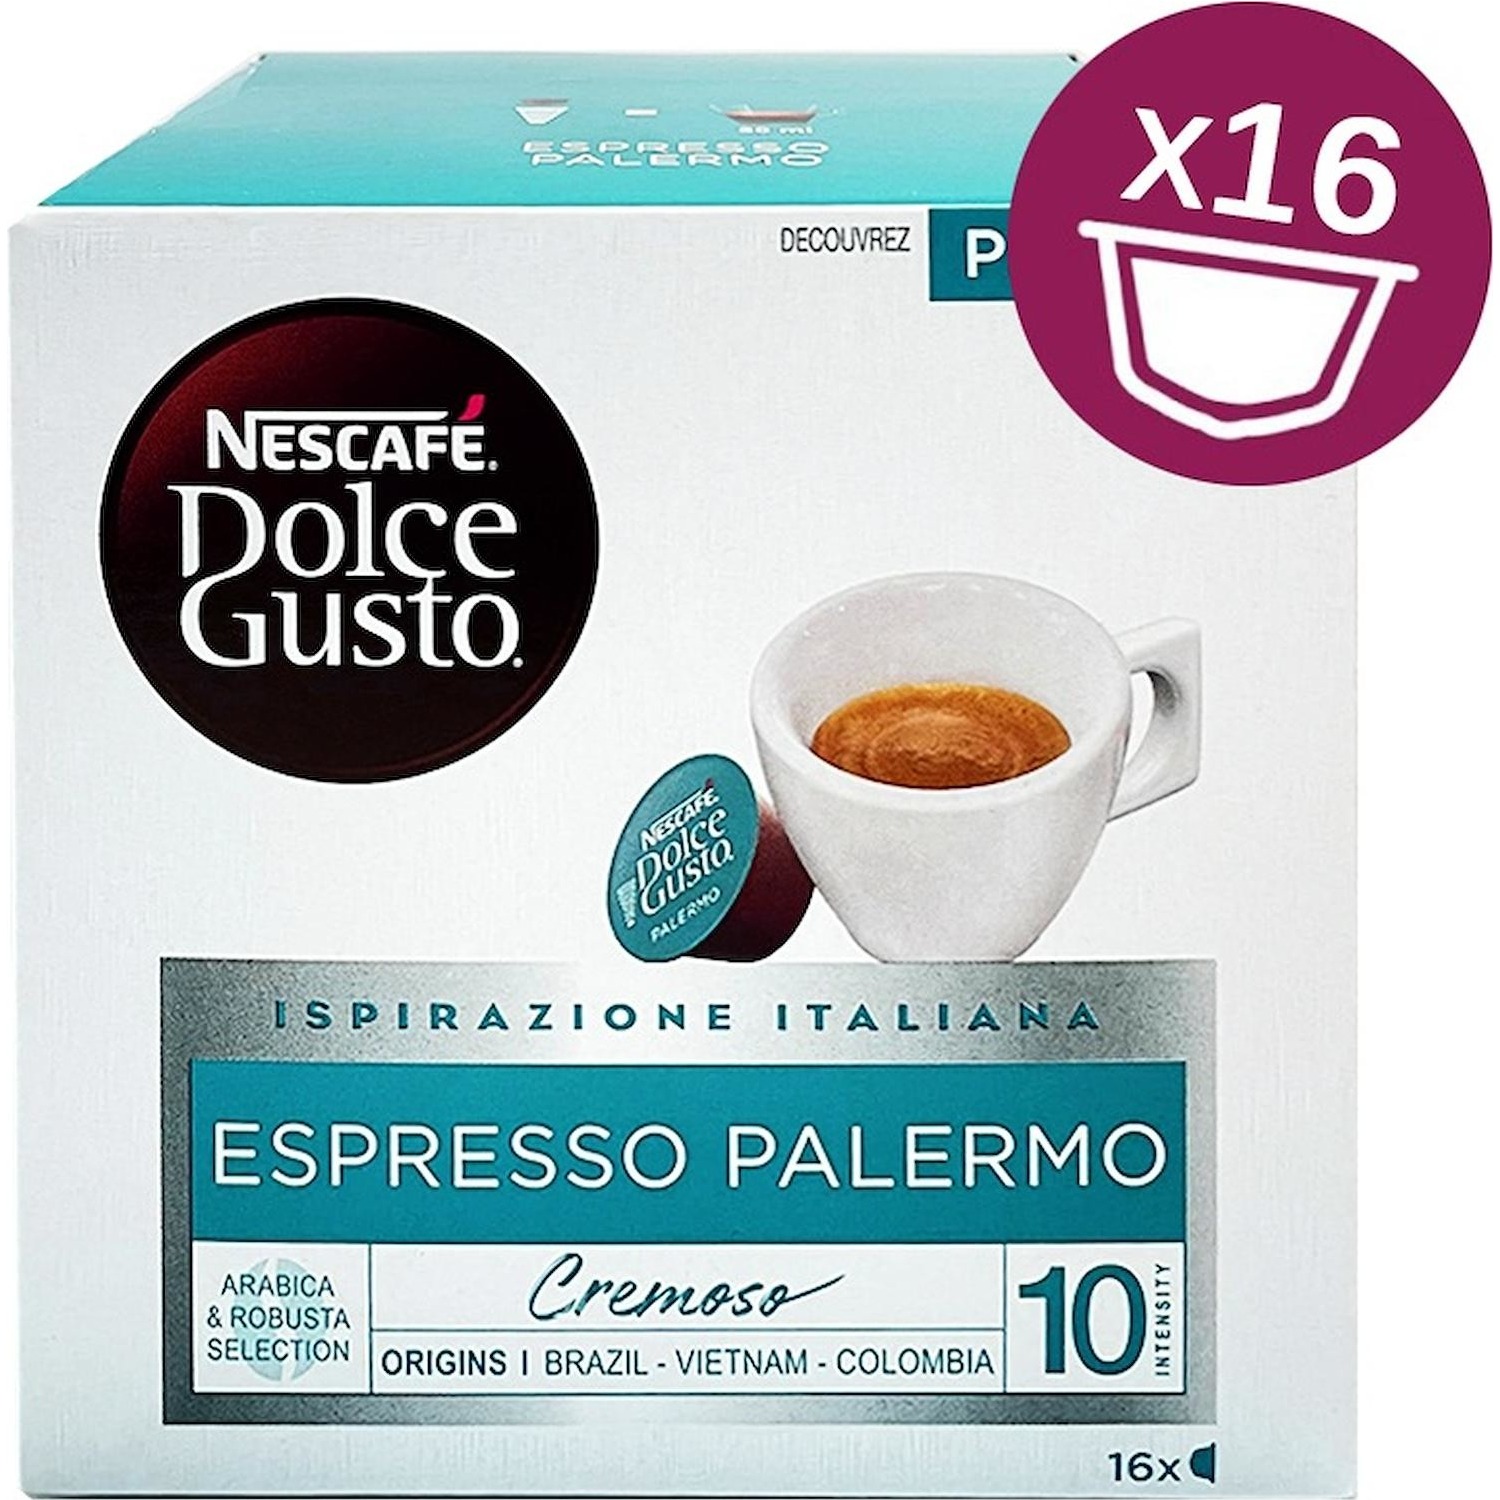 Immagine per Capsule Caffe' Dolce Gusto Espresso Palermo 16 capsule da DIMOStore